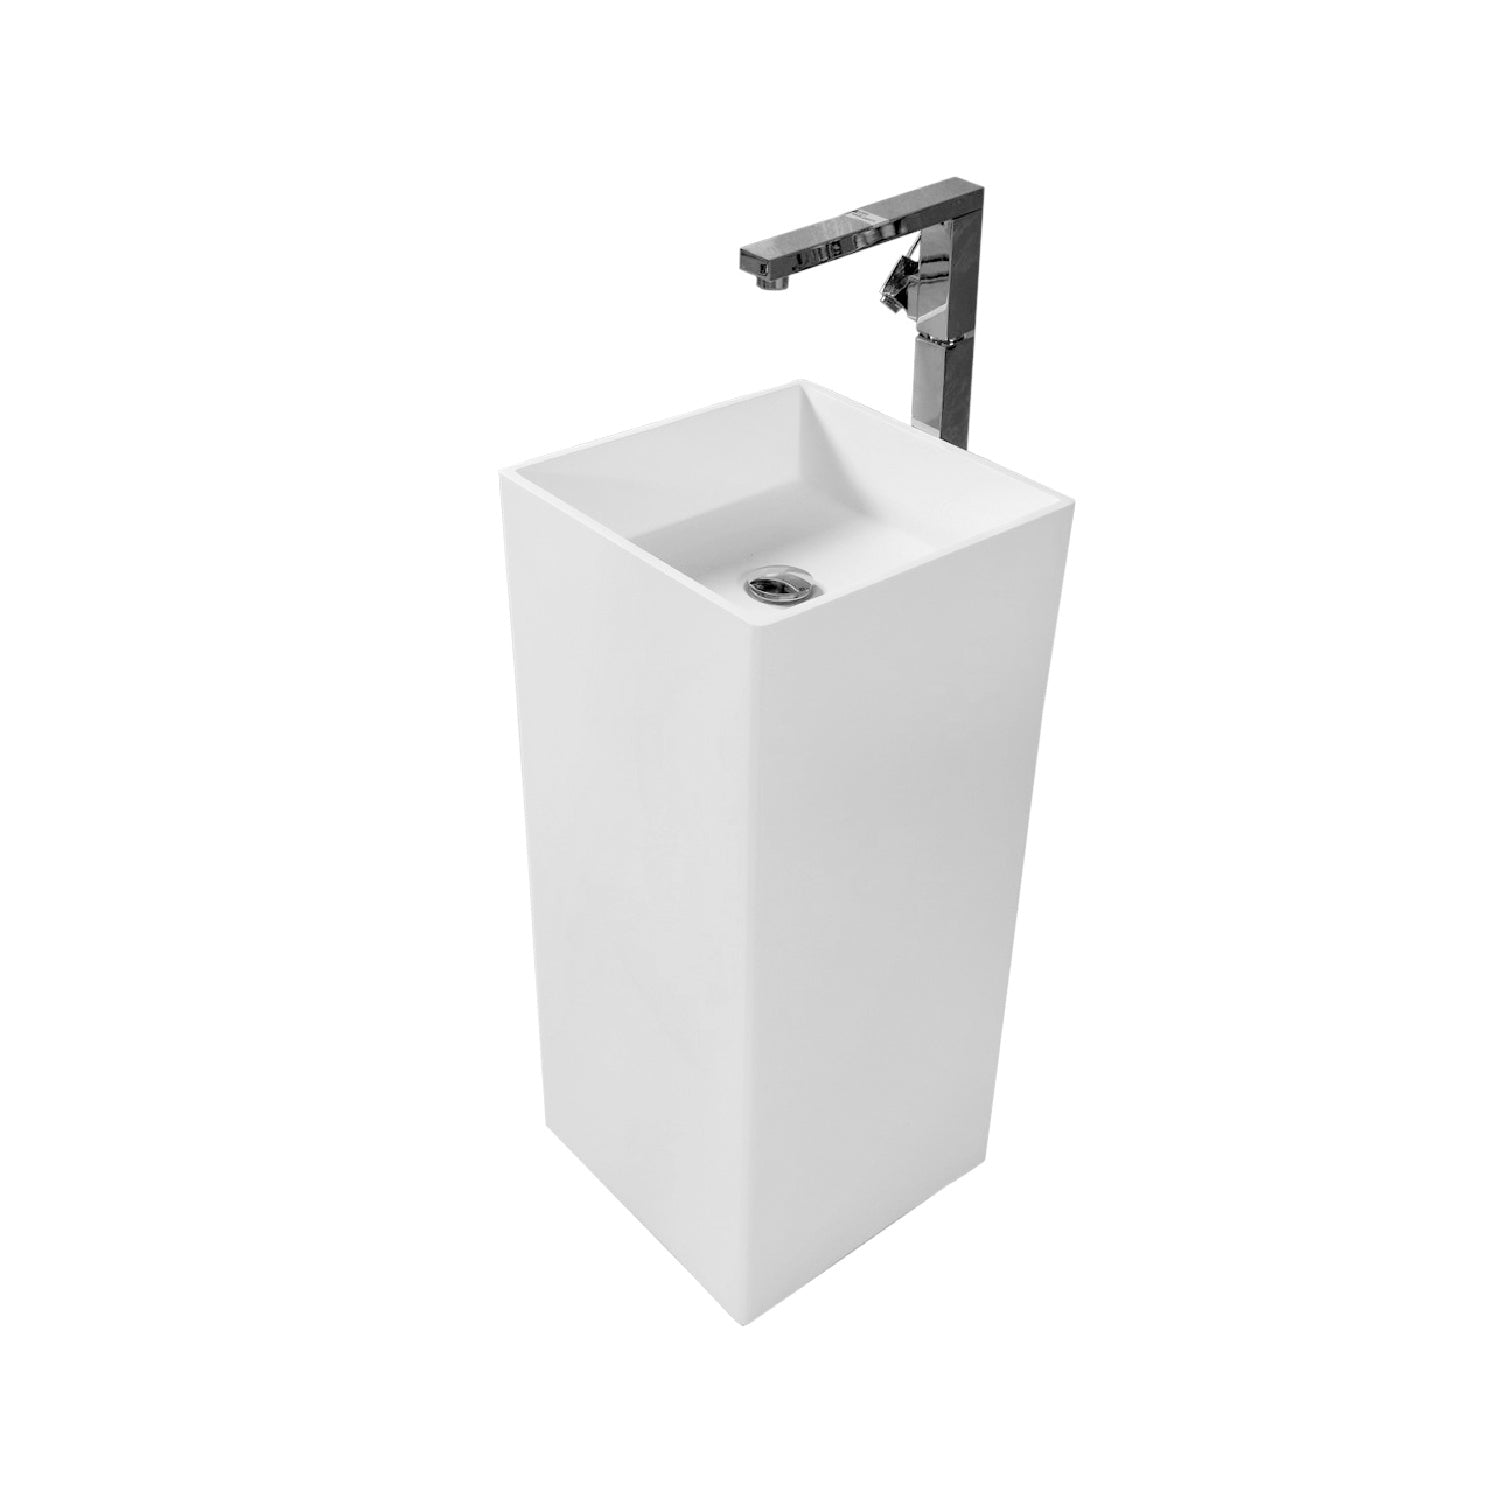 Lavabo de baño independiente con pedestal cuadrado de superficie sólida DAX, acabado blanco mate, 15-3/4 x 15-3/4 x 34-1/2 pulgadas (DAX-AB-1382)